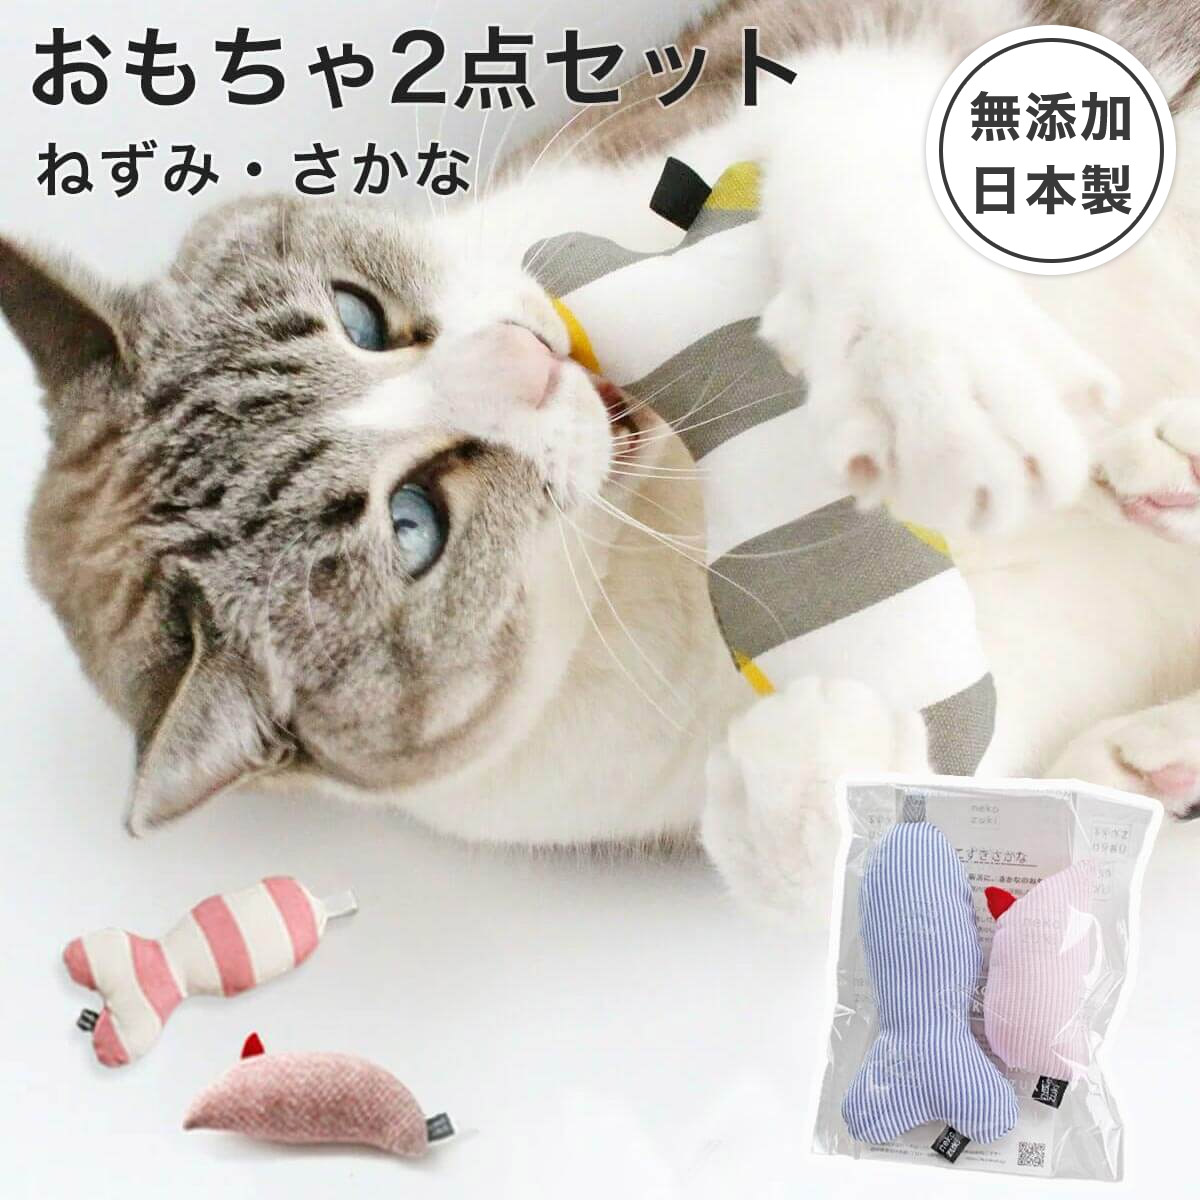 福袋 日本製 猫 おもちゃ セット ねずみ さかな ぬいぐるみ